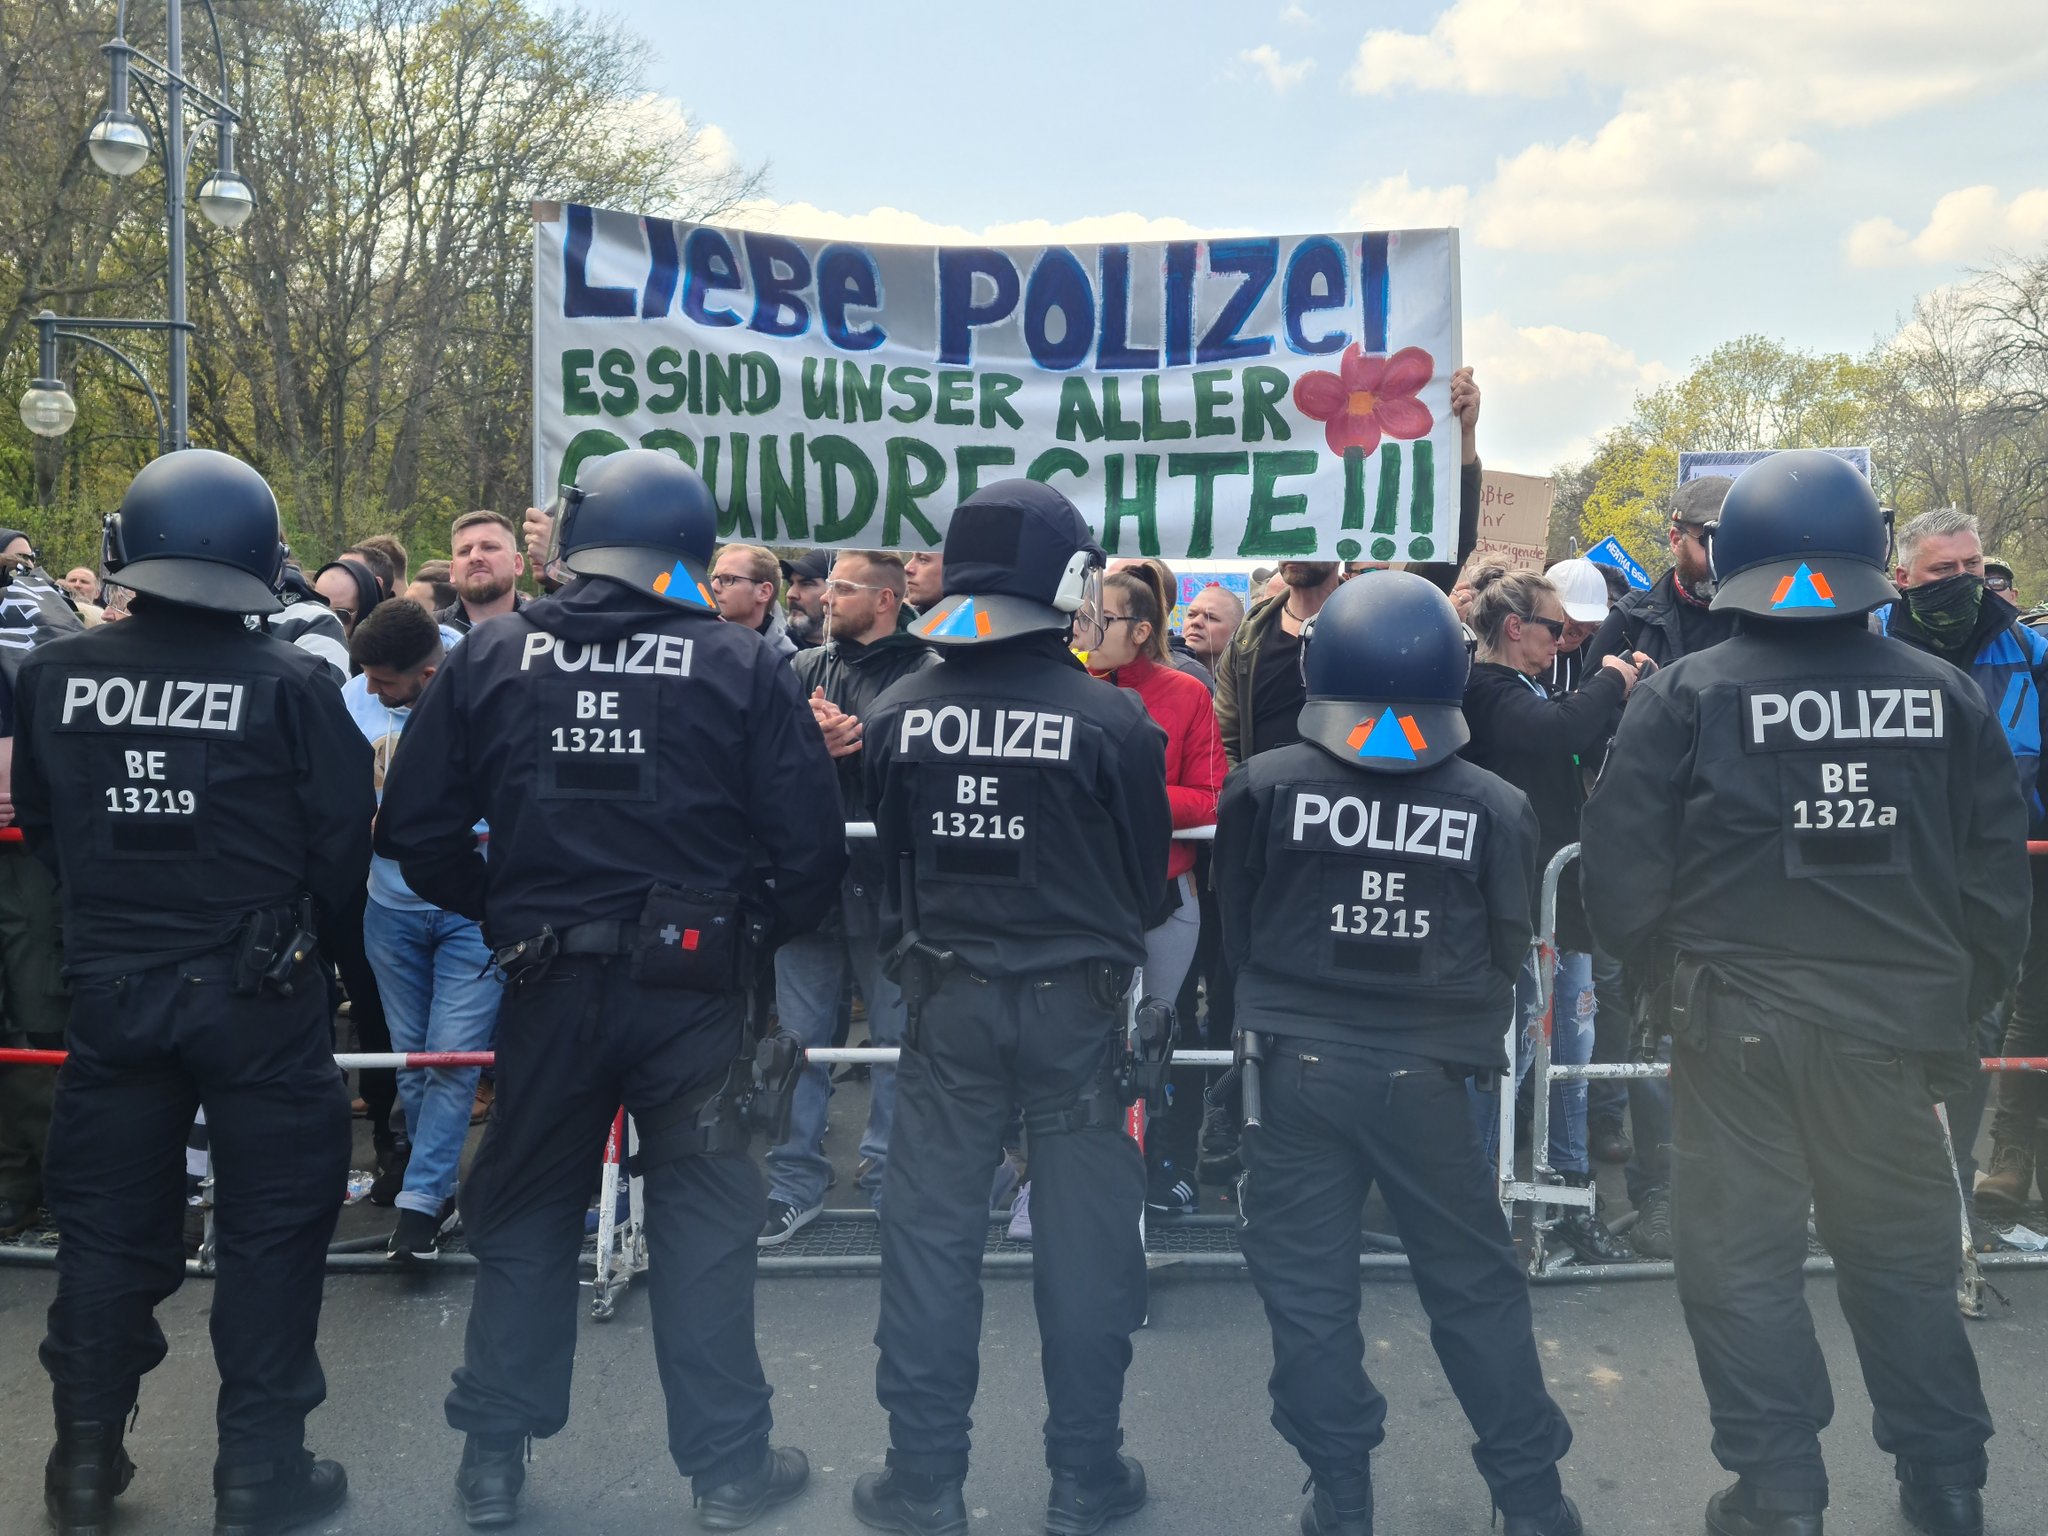 Акция протеста в Берлине. Скриншот witter.com/pm_cheung